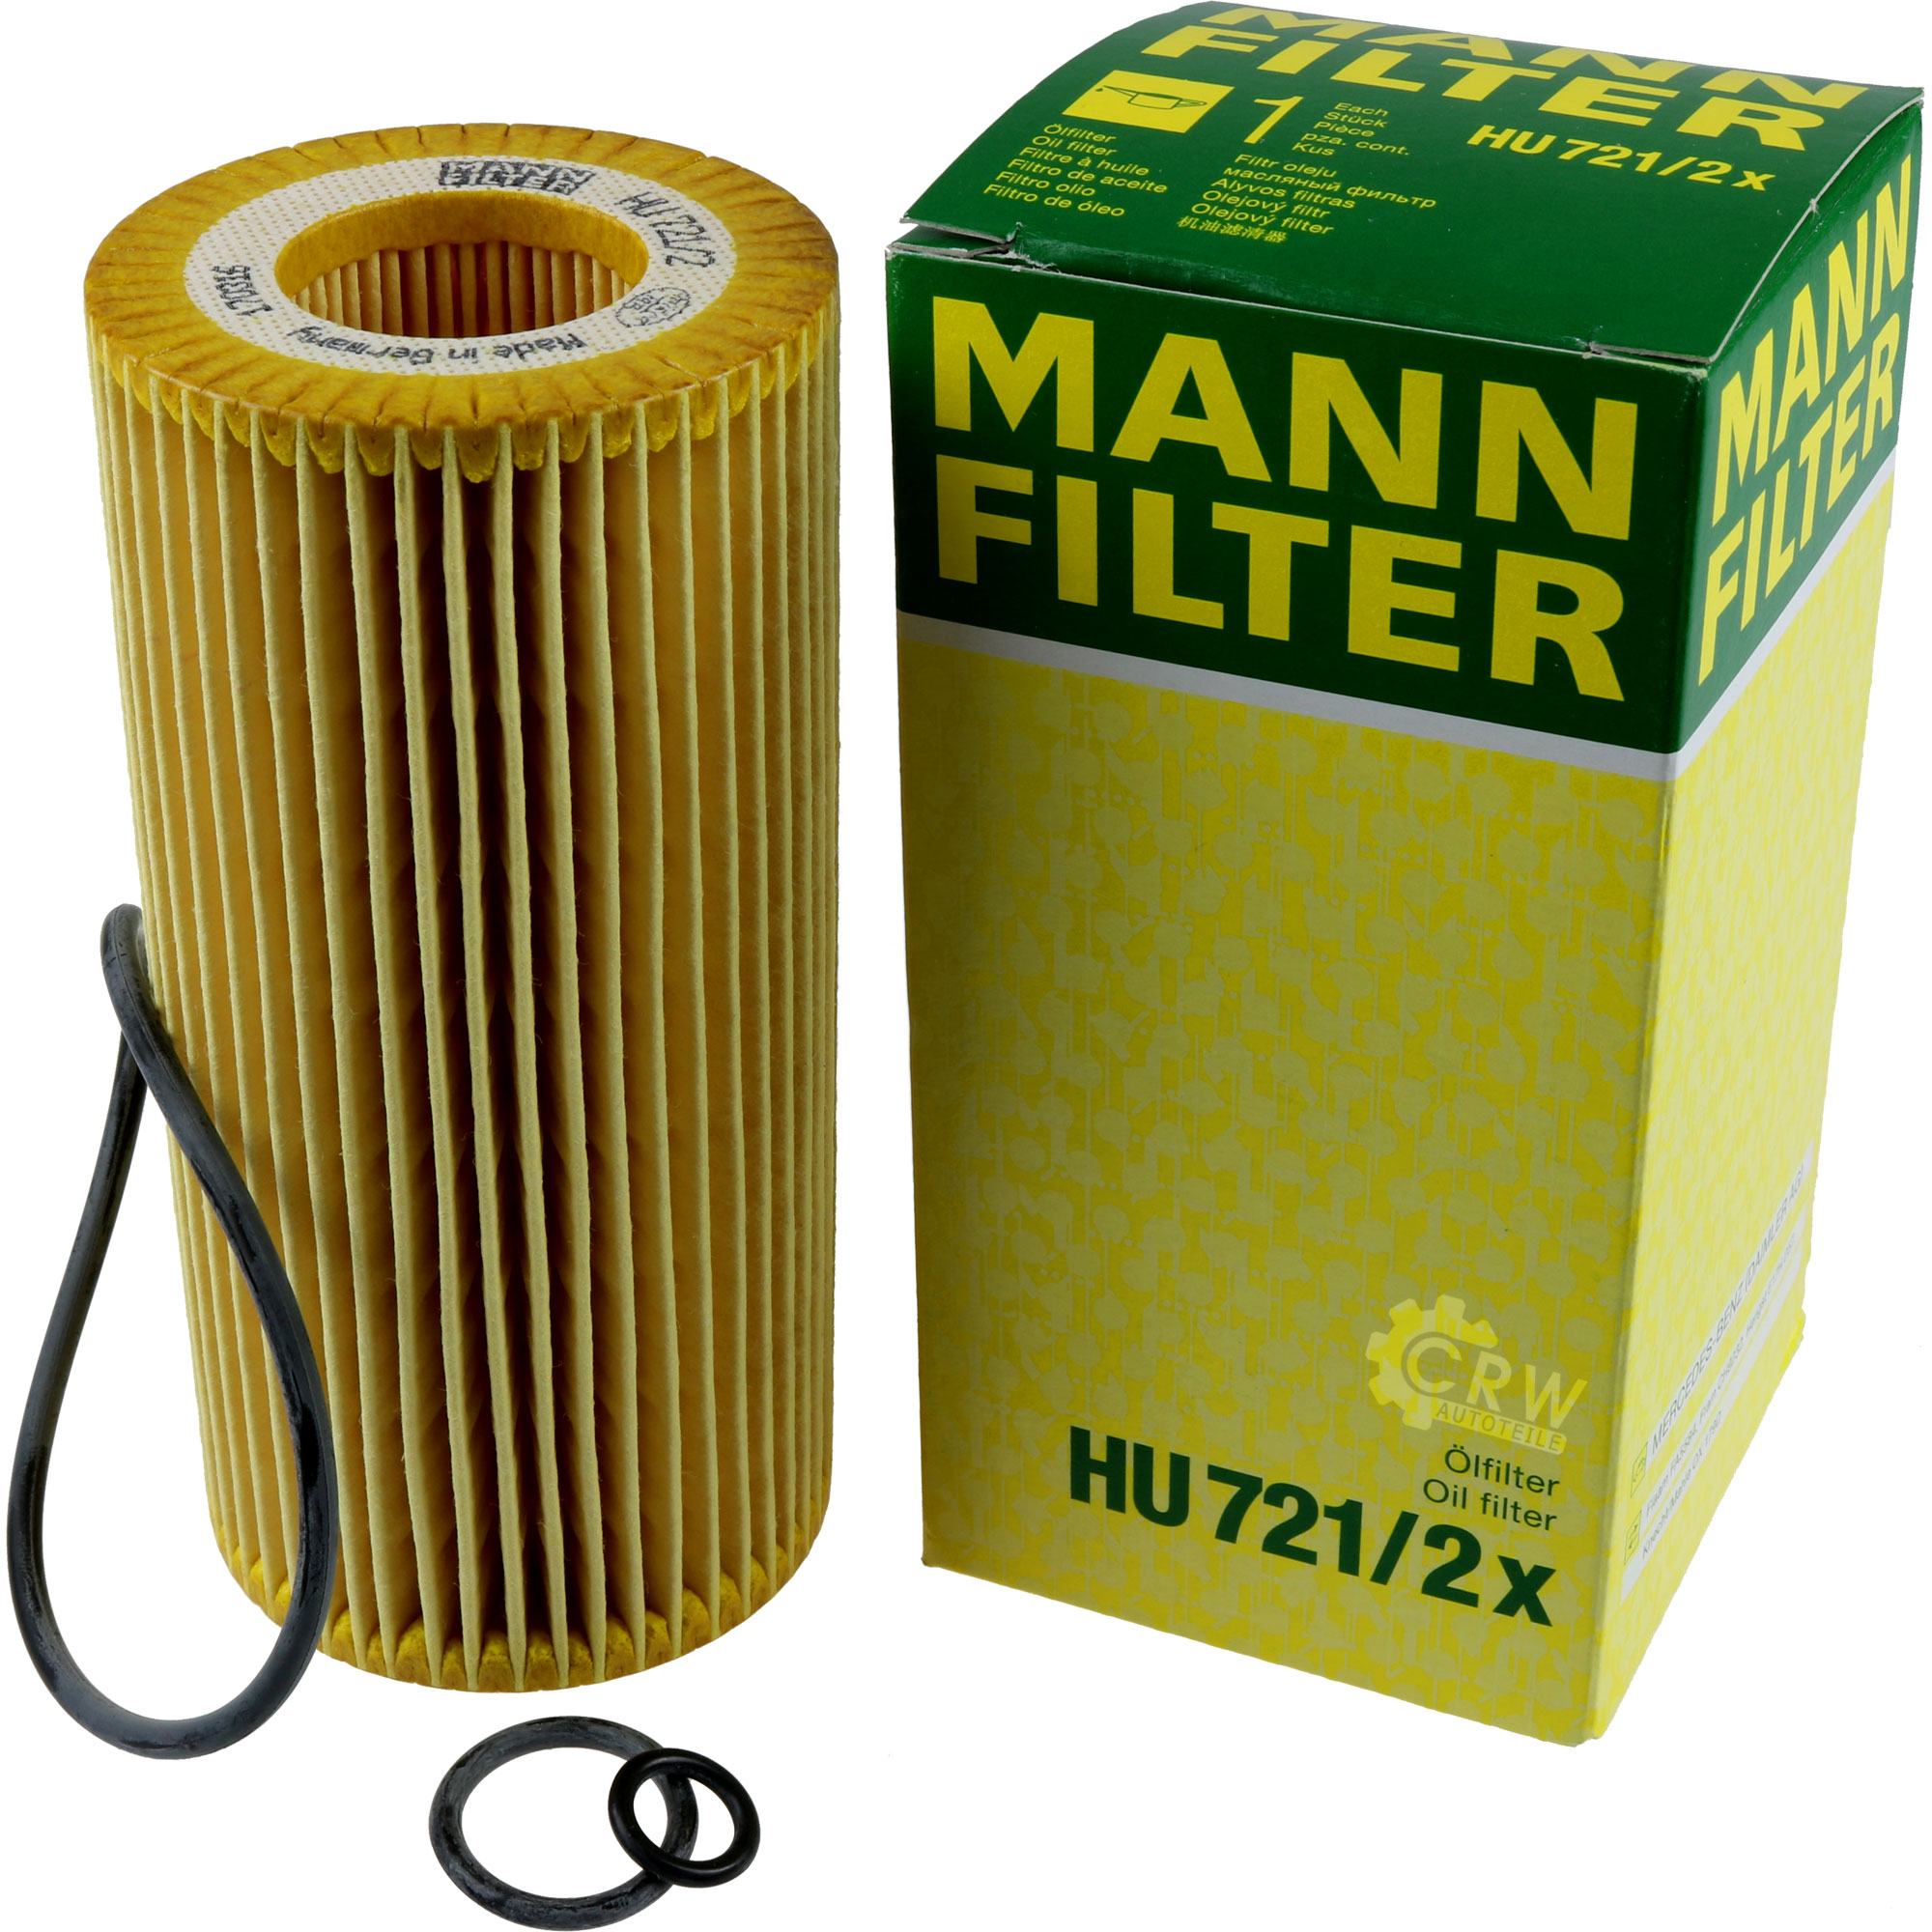 MANN-FILTER Ölfilter HU 721/2 x Oil Filter